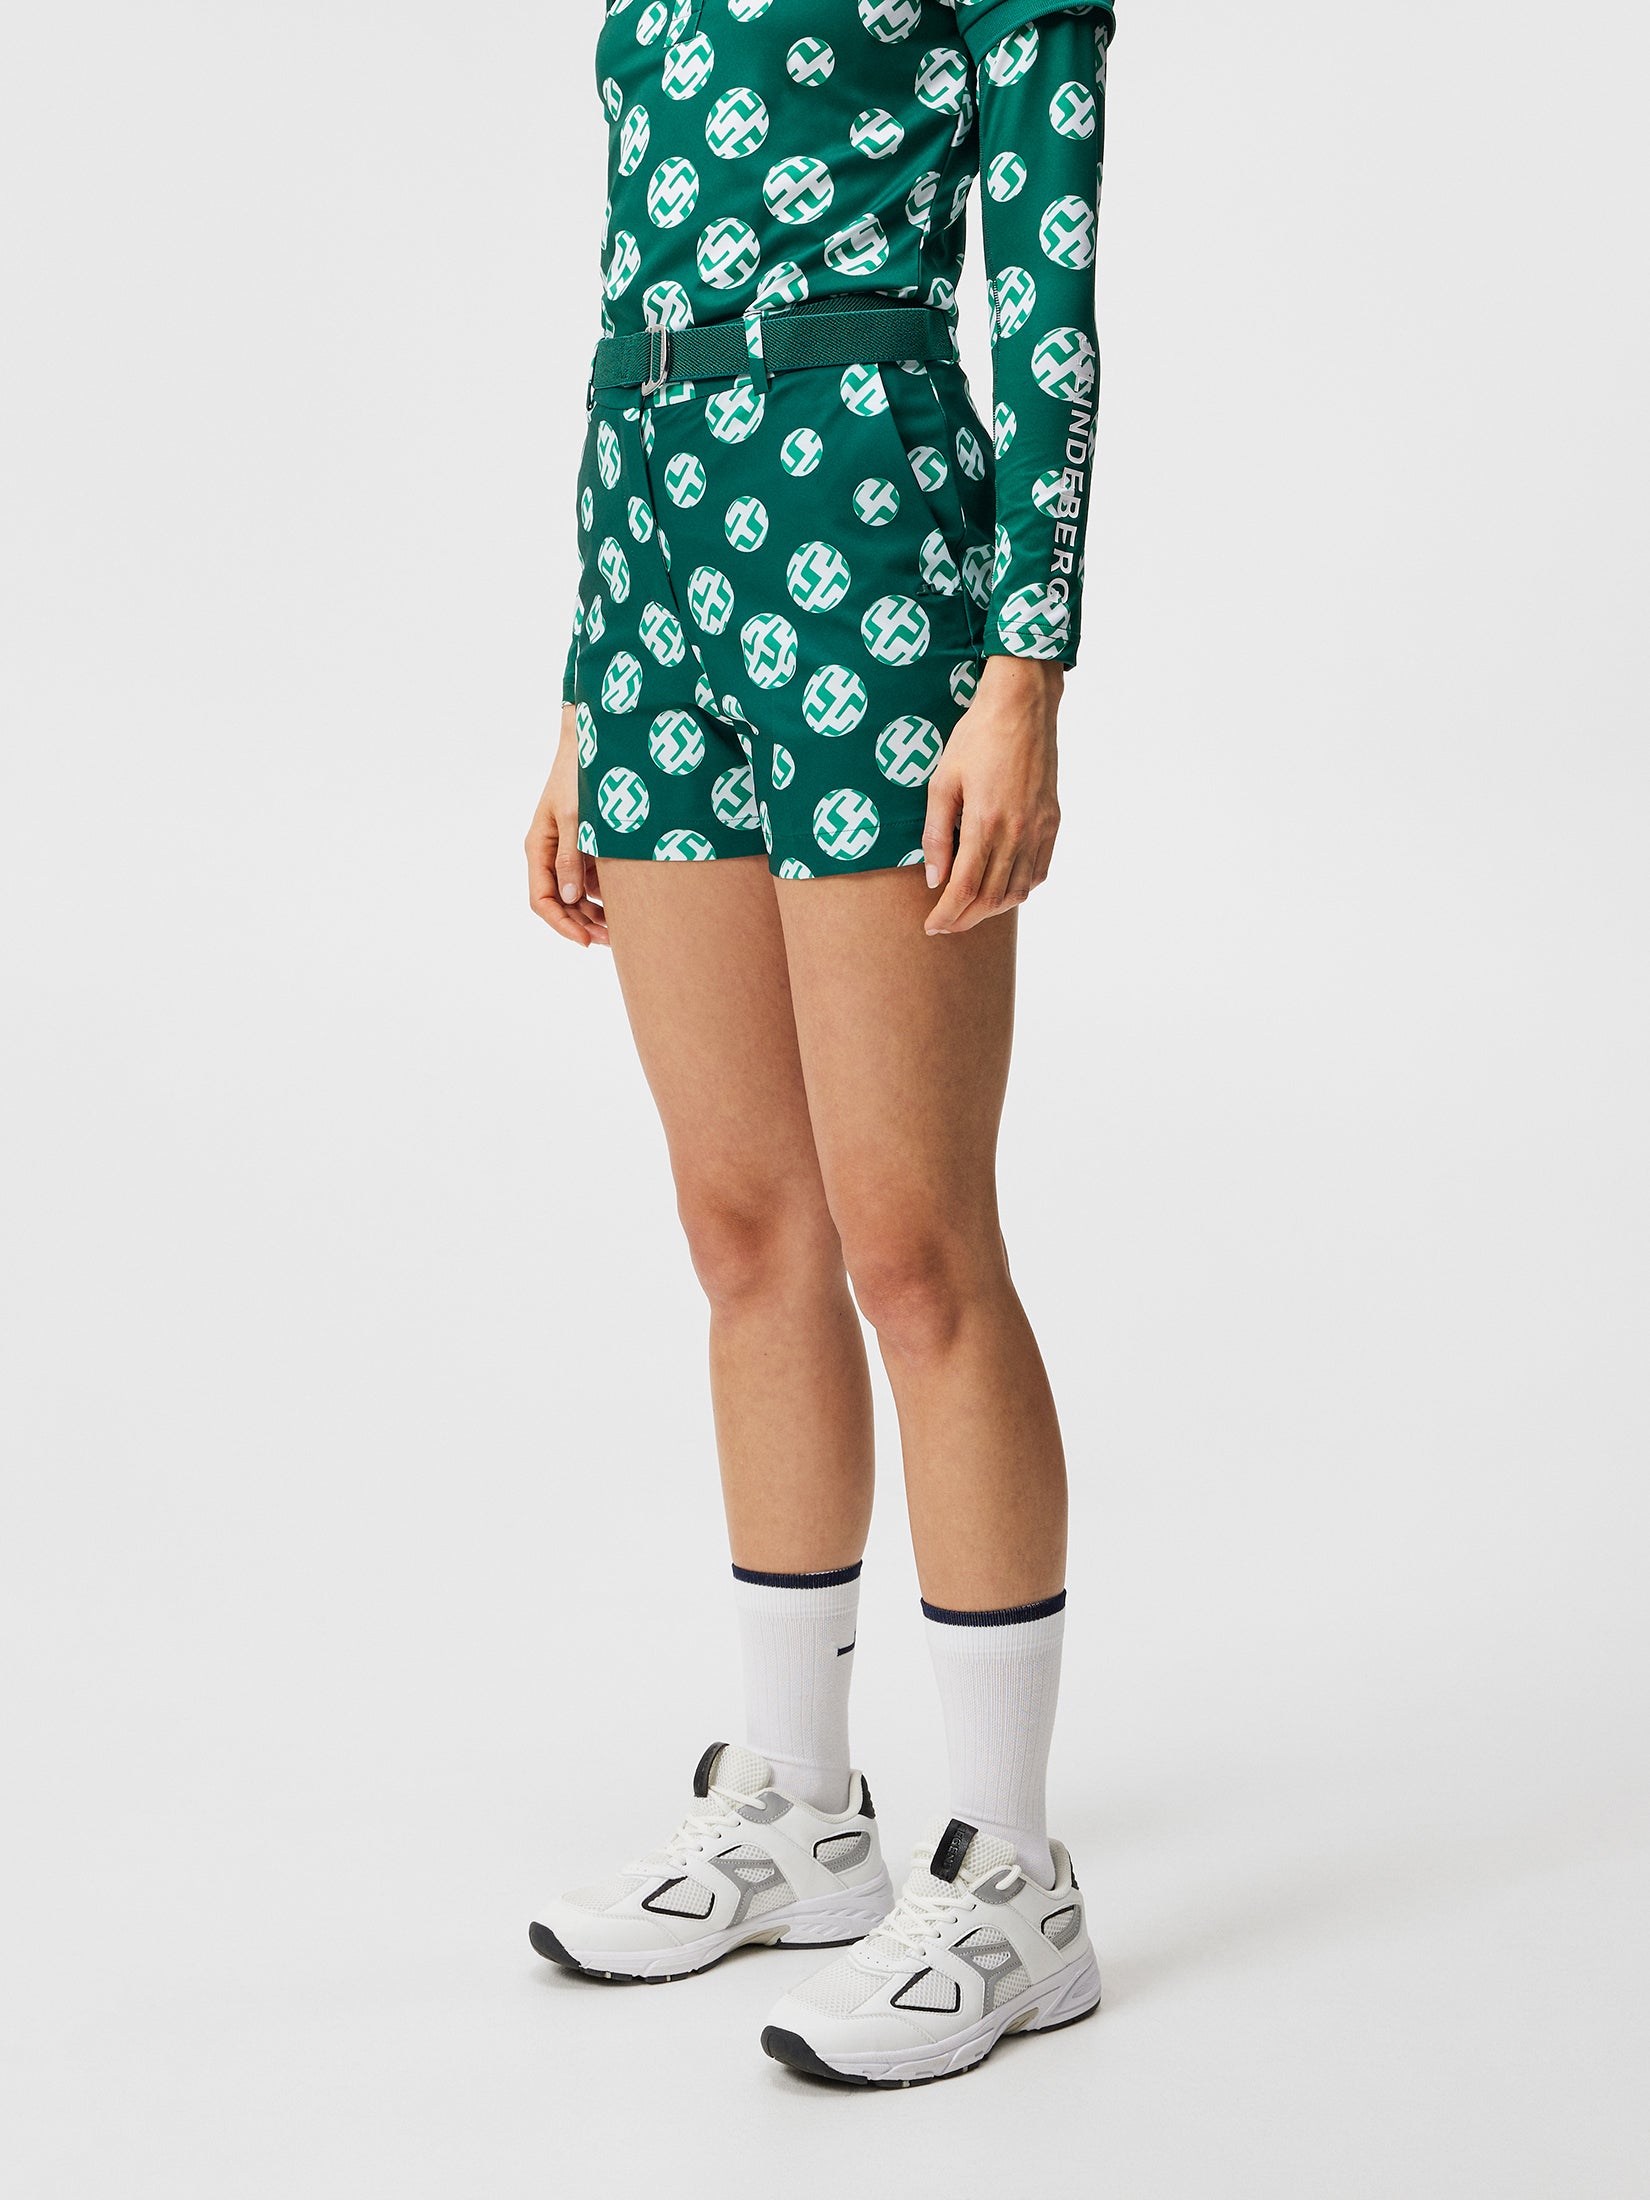 제이린드버그 J.LINDEBERG Gwen Printed Shorts,Rain Forest Sphere Dot